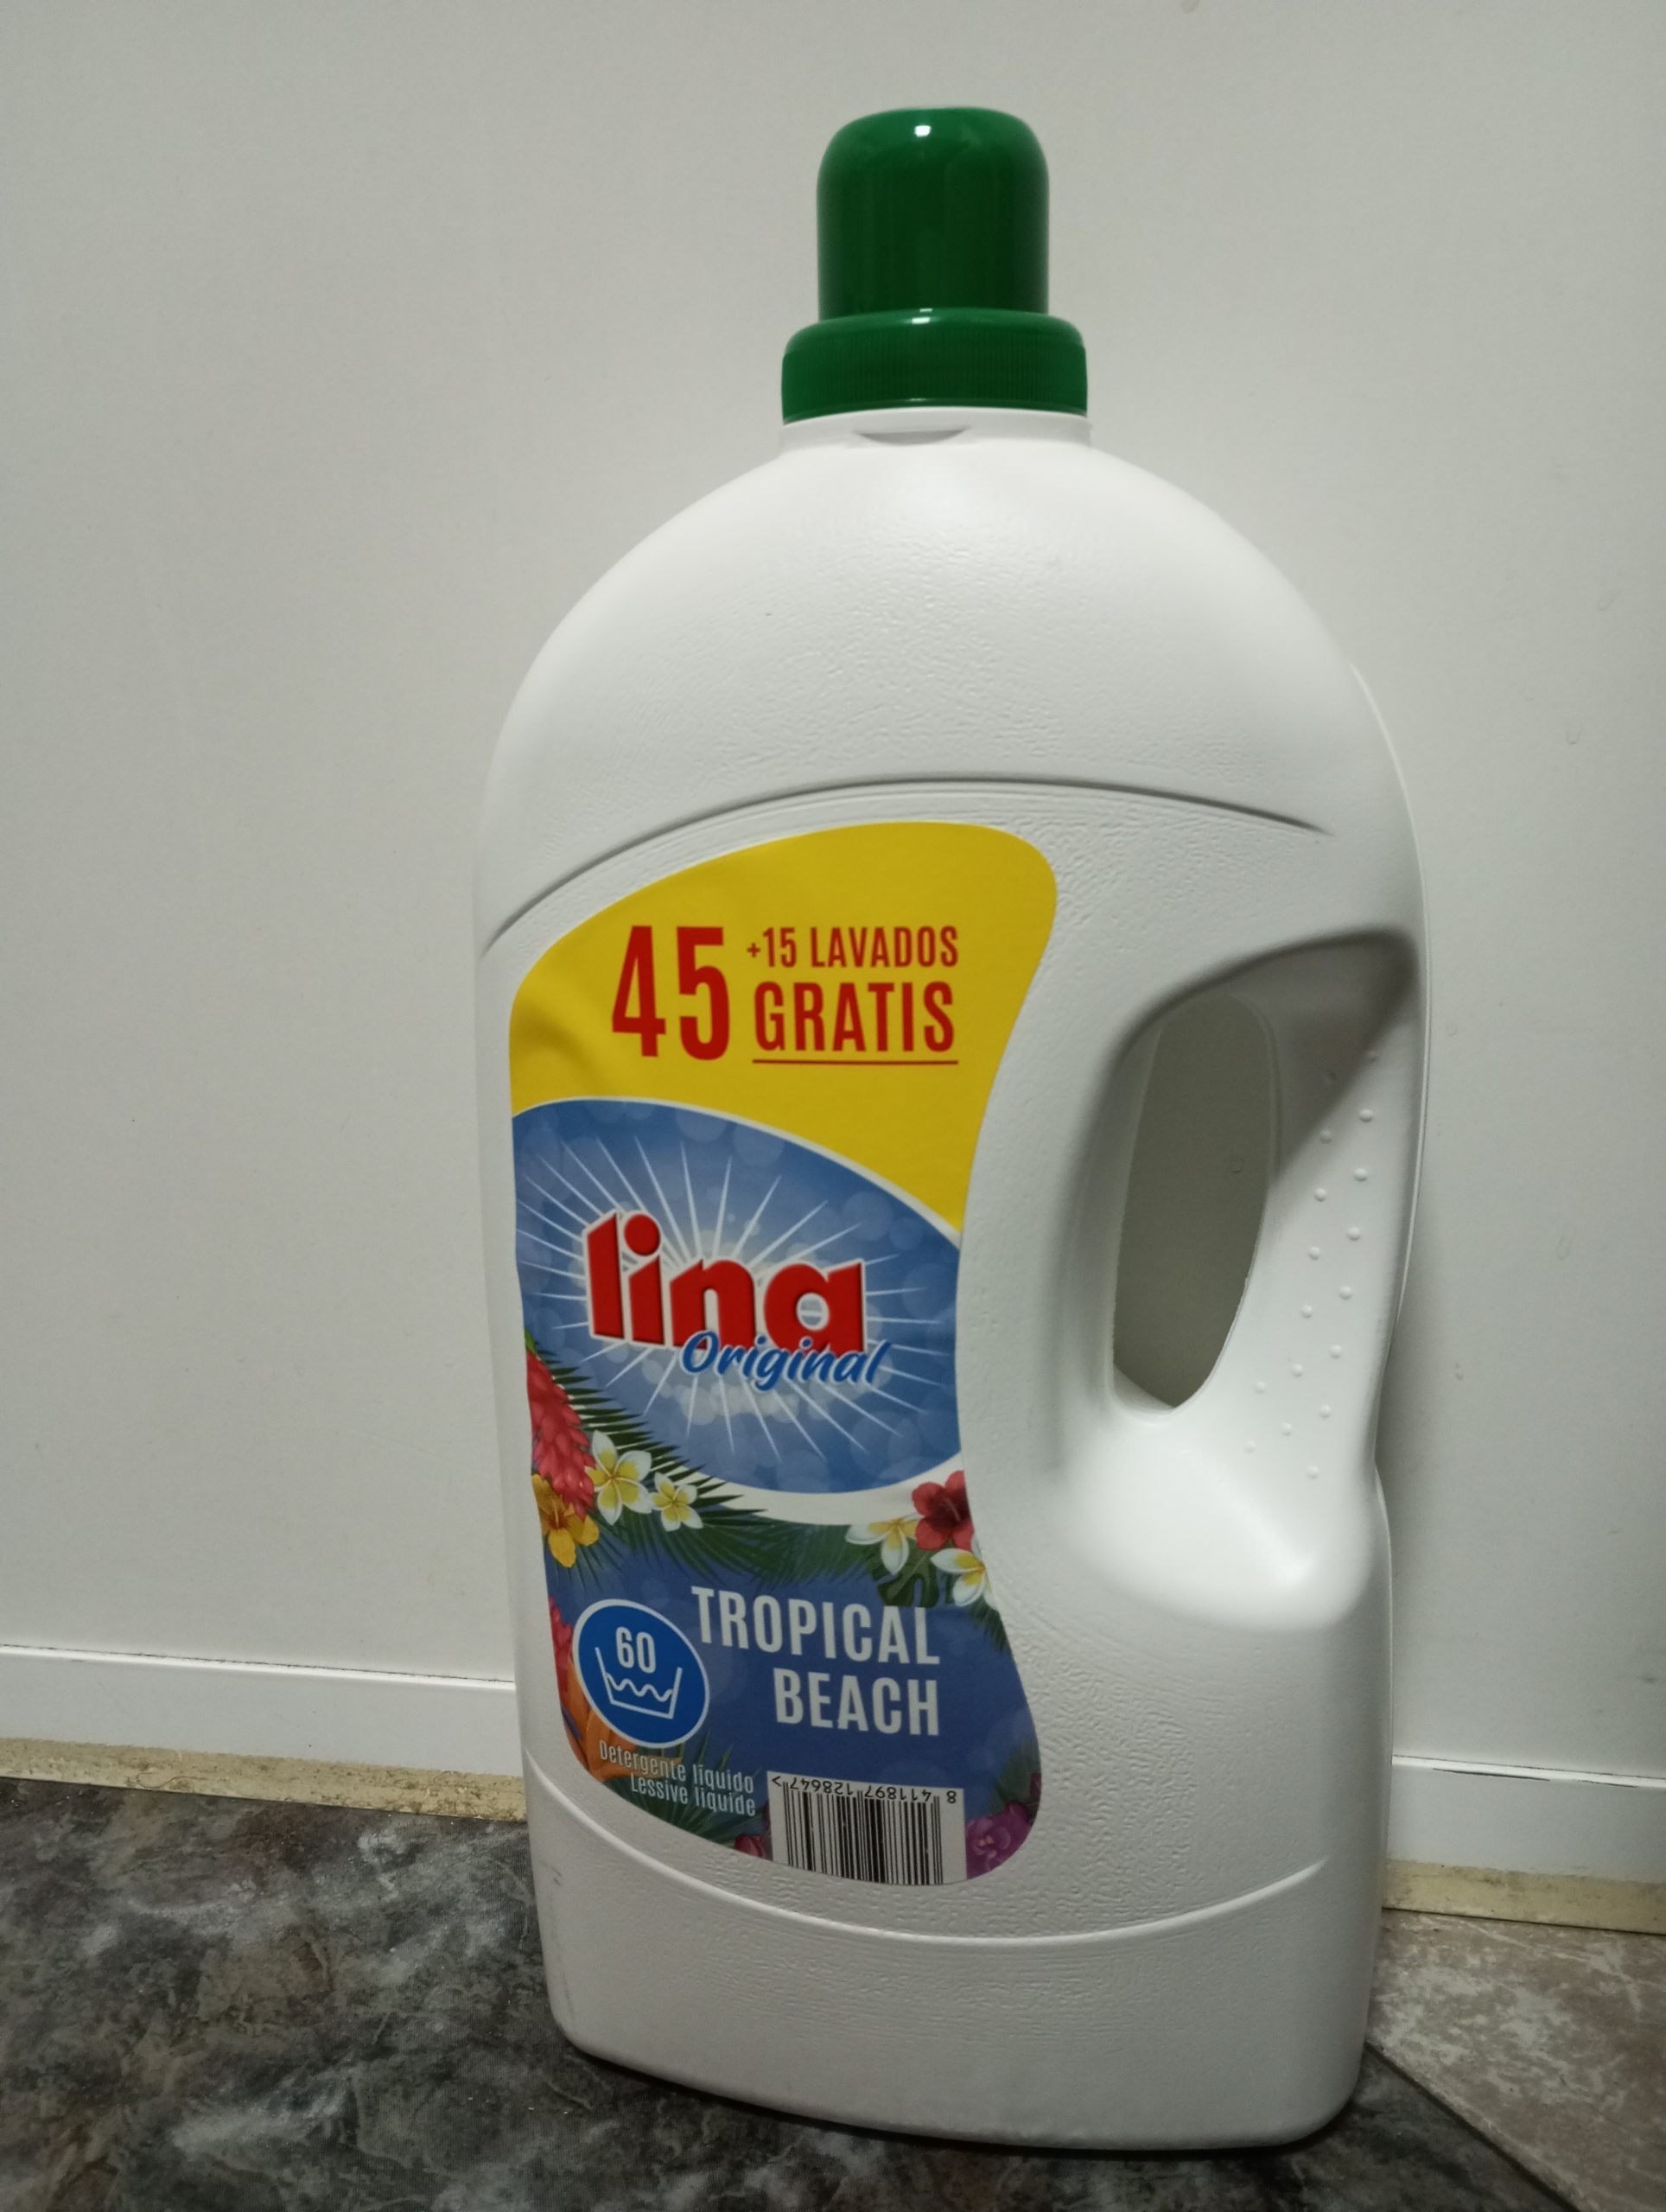 Detergente Lina original Tropical Beach